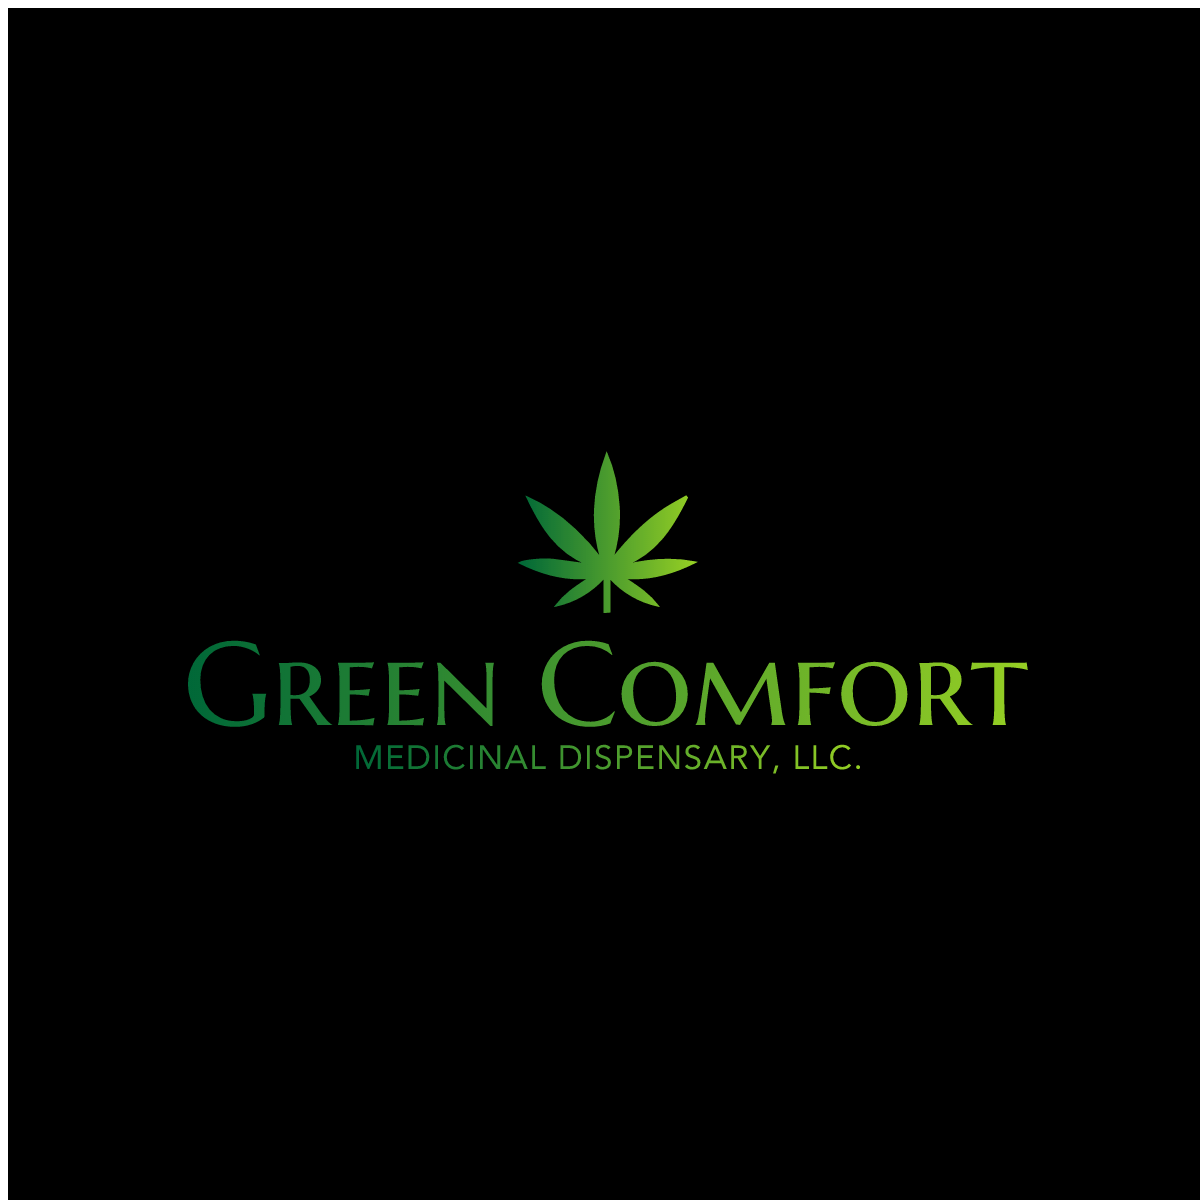 Green Comfort Medicinal Dispensary - Medical Marijuana Doctors - Cannabizme.com